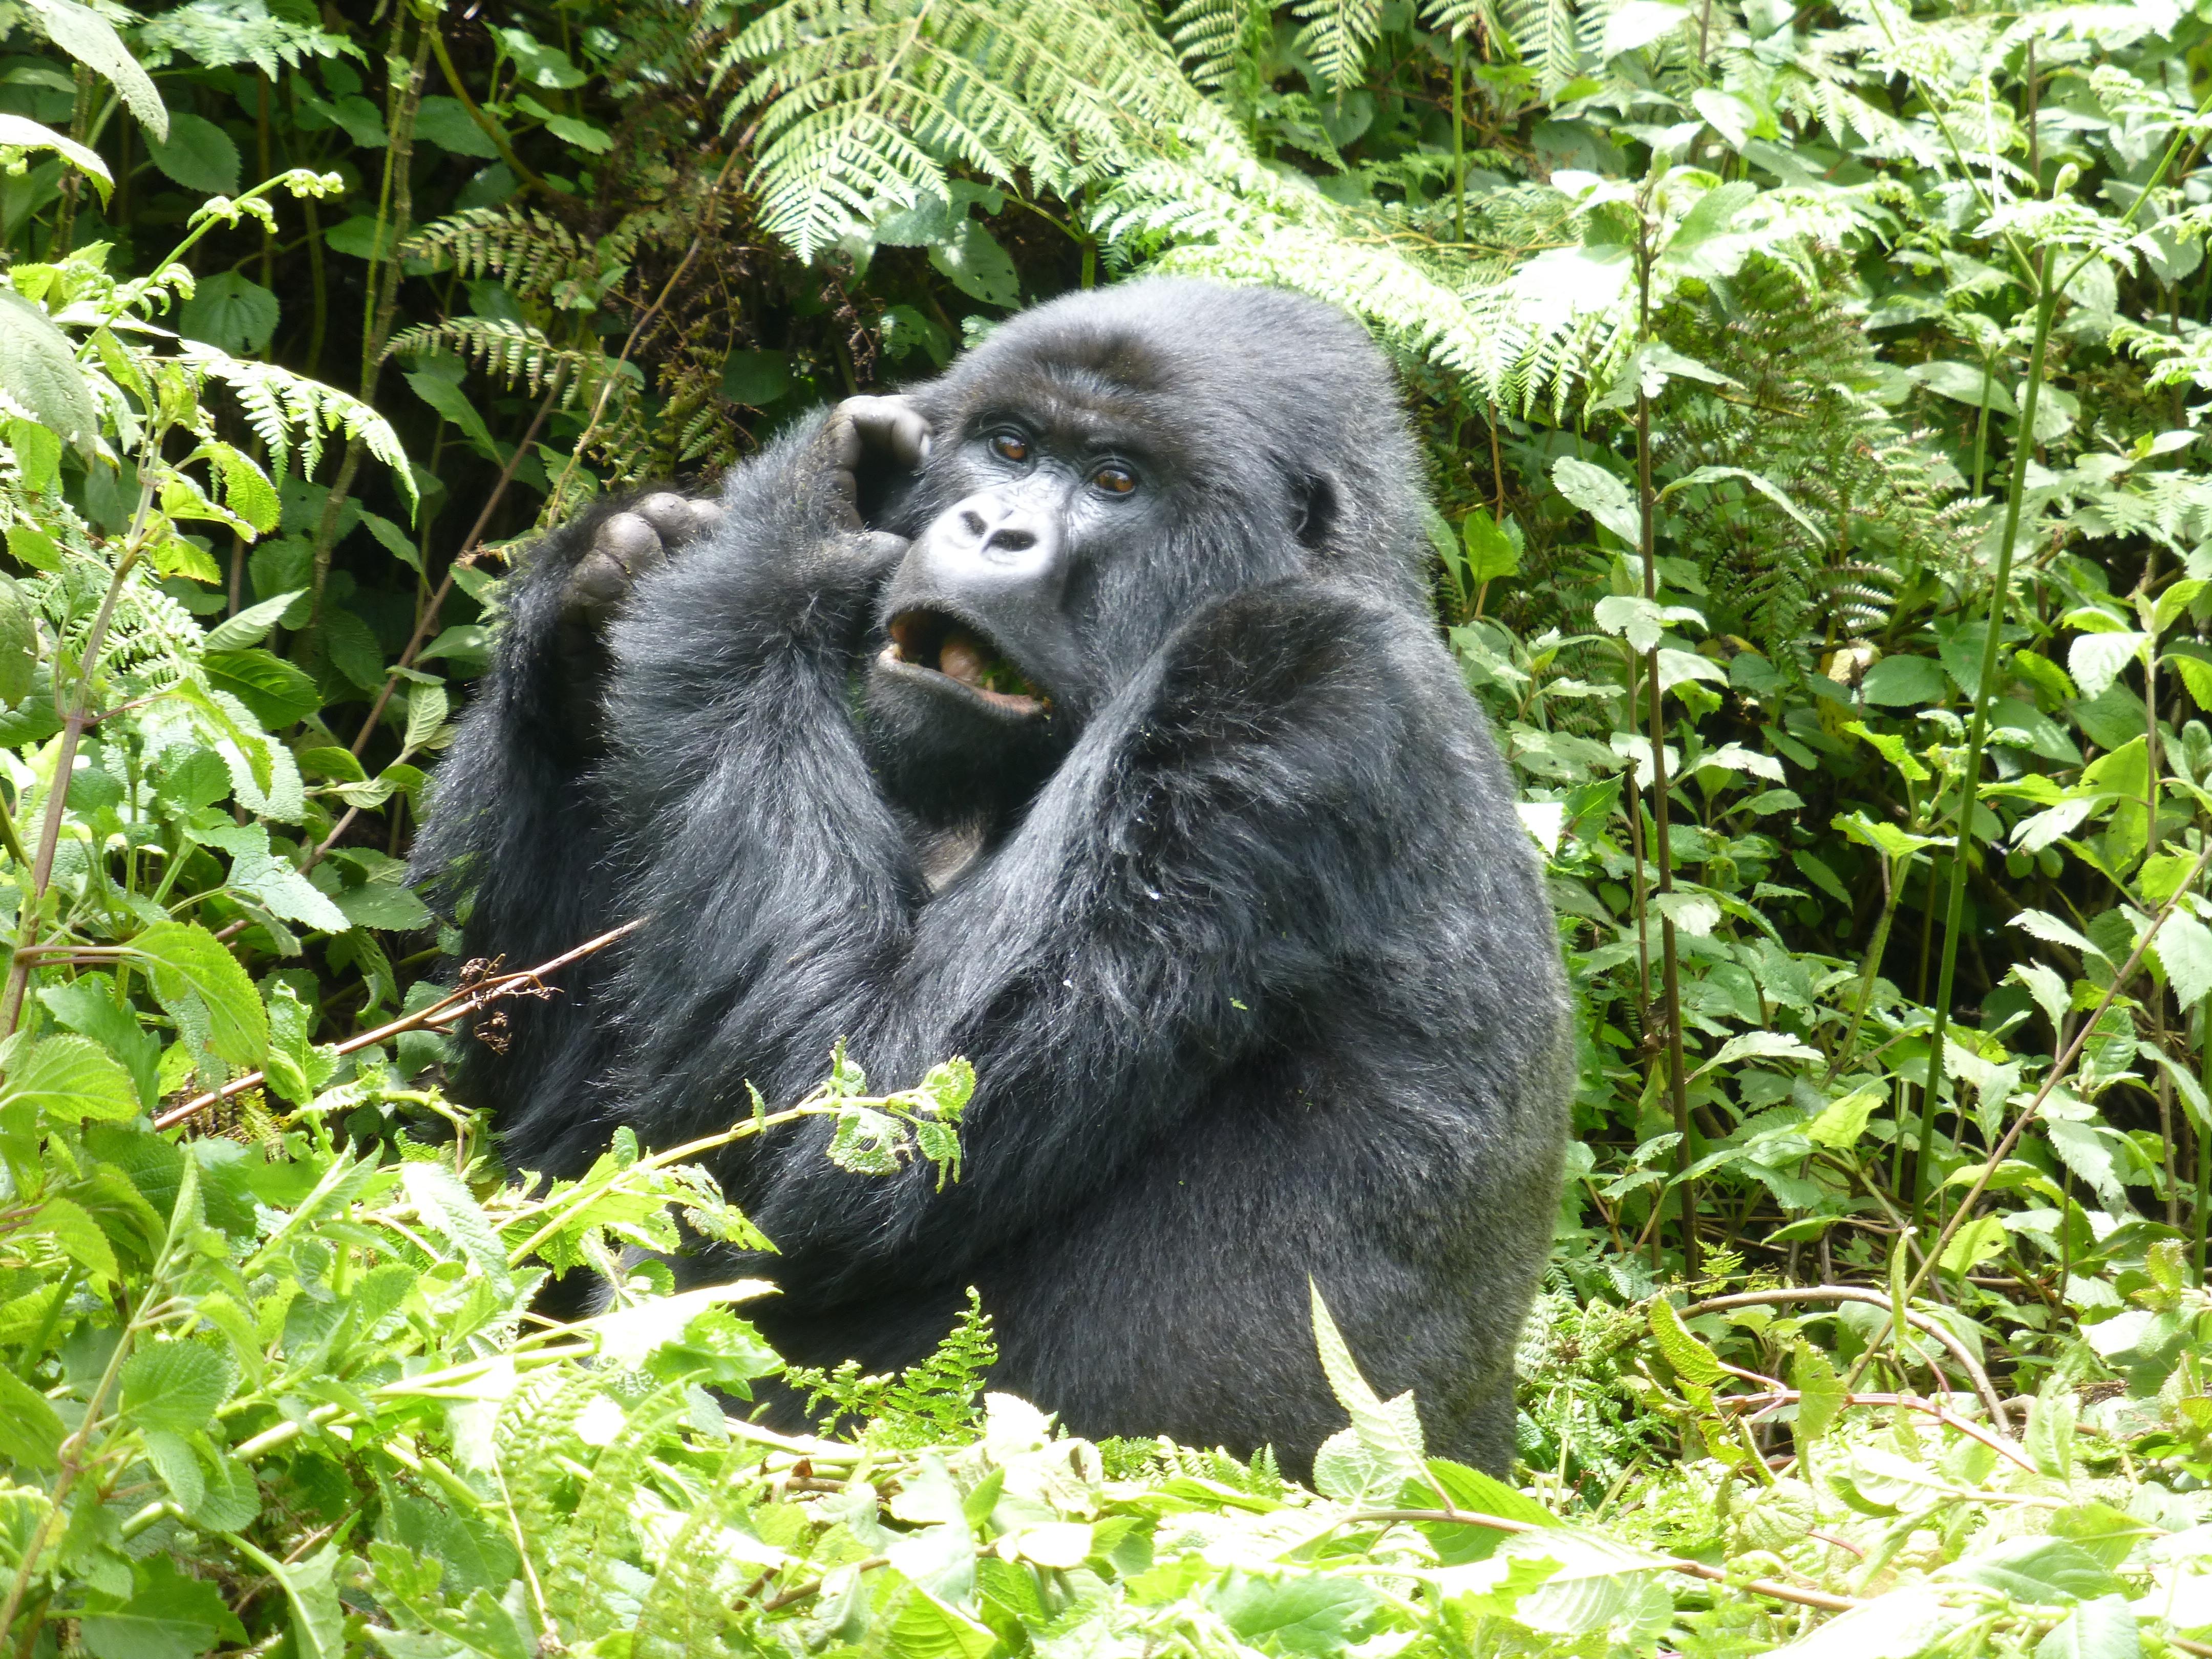 7 Days Uganda Gorillas chimps and shoebill stork safari